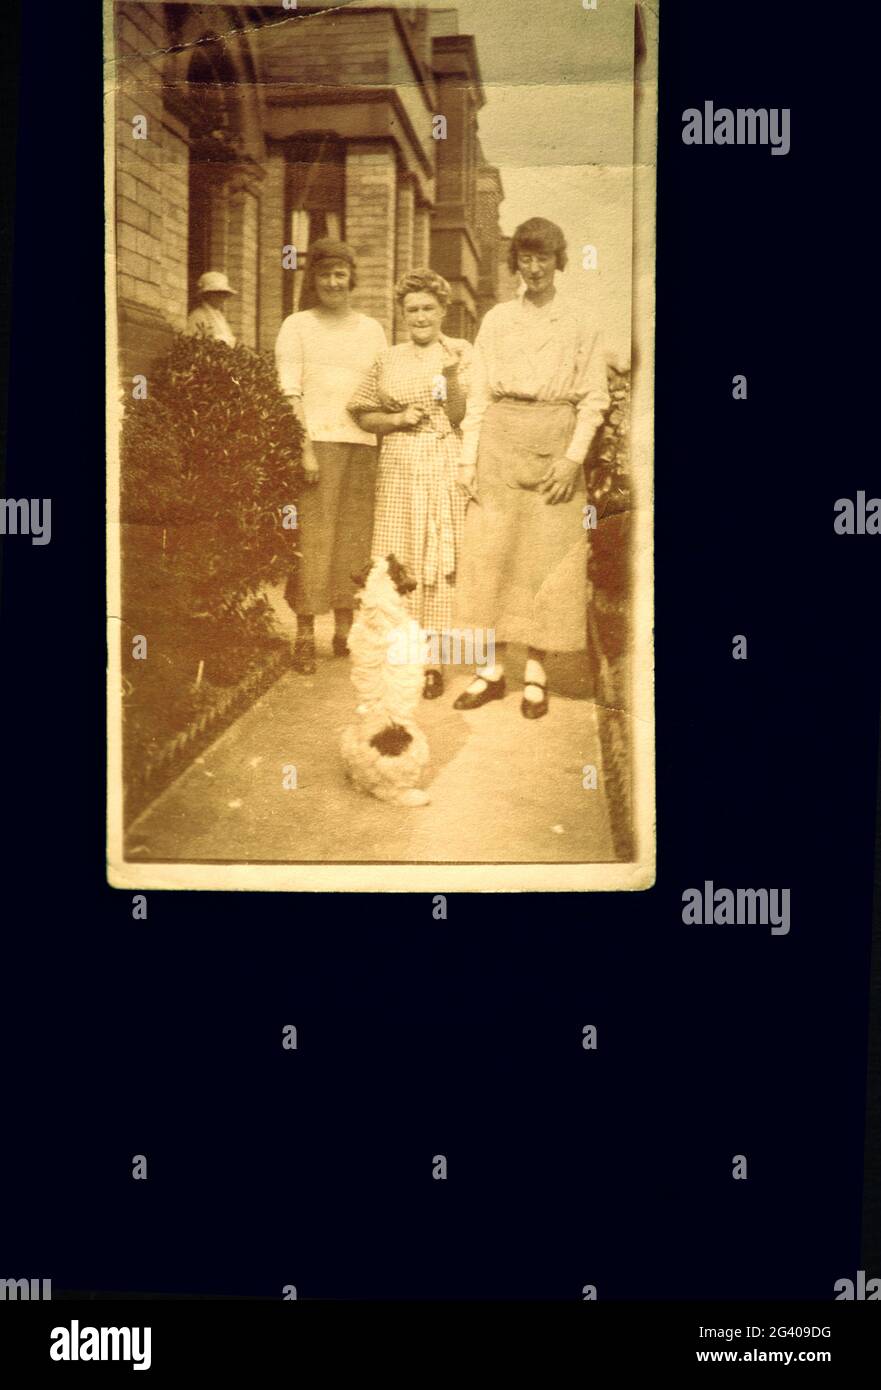 1910 authentique photographie vintage de deux jeunes femmes une femme et un chien adulte de taille moyenne debout à l'extérieur de la maison. Concept de nostalgie, famille, historique Banque D'Images